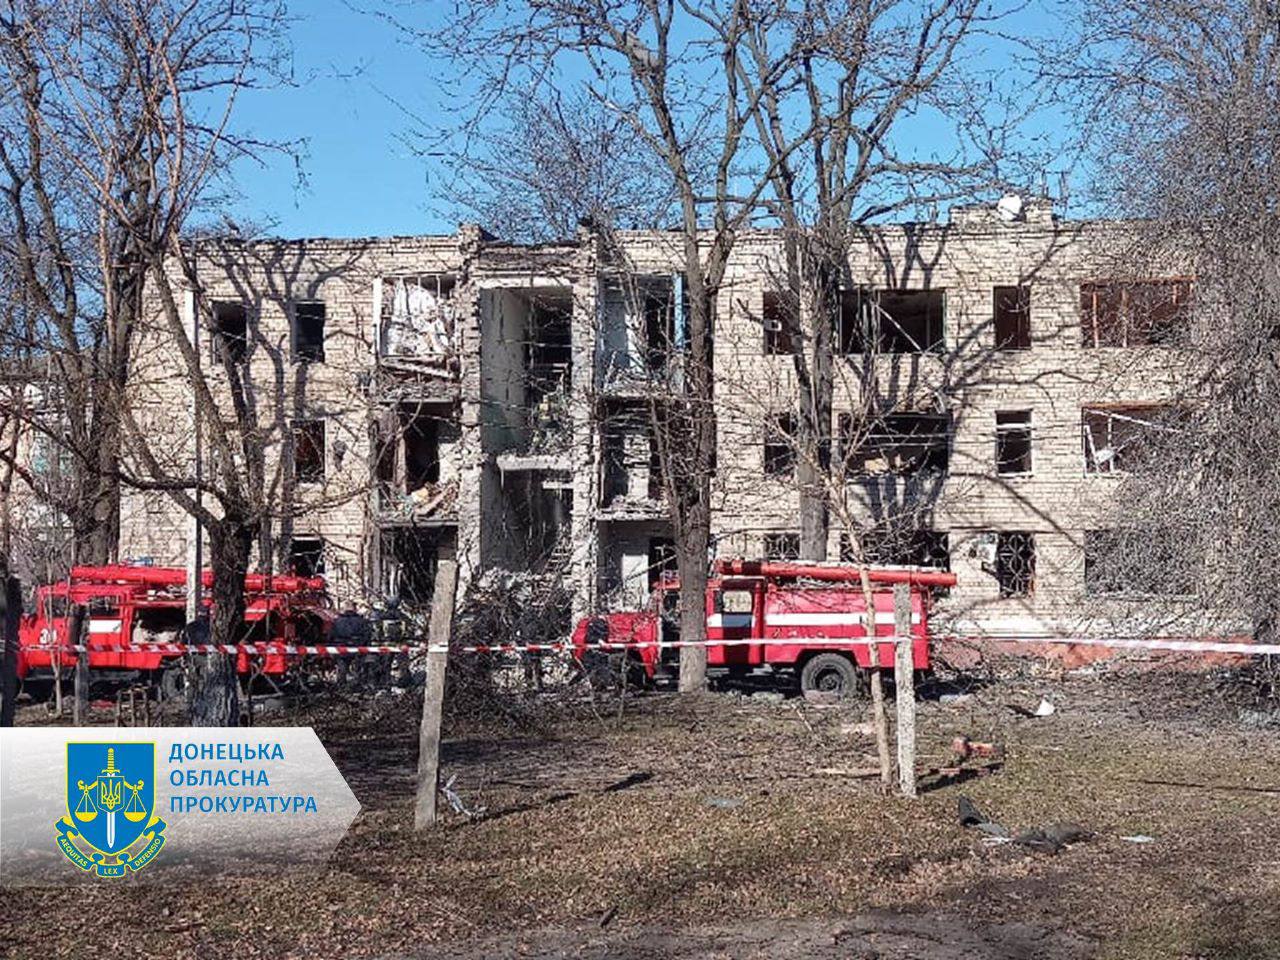 Відновити після обстрілів хочуть напівзруйновані будинки що розташовані по вул. Богдана Хмельницького, 4, Ярослава Мудрого, 44 та Ярослава Мудрого, 54.